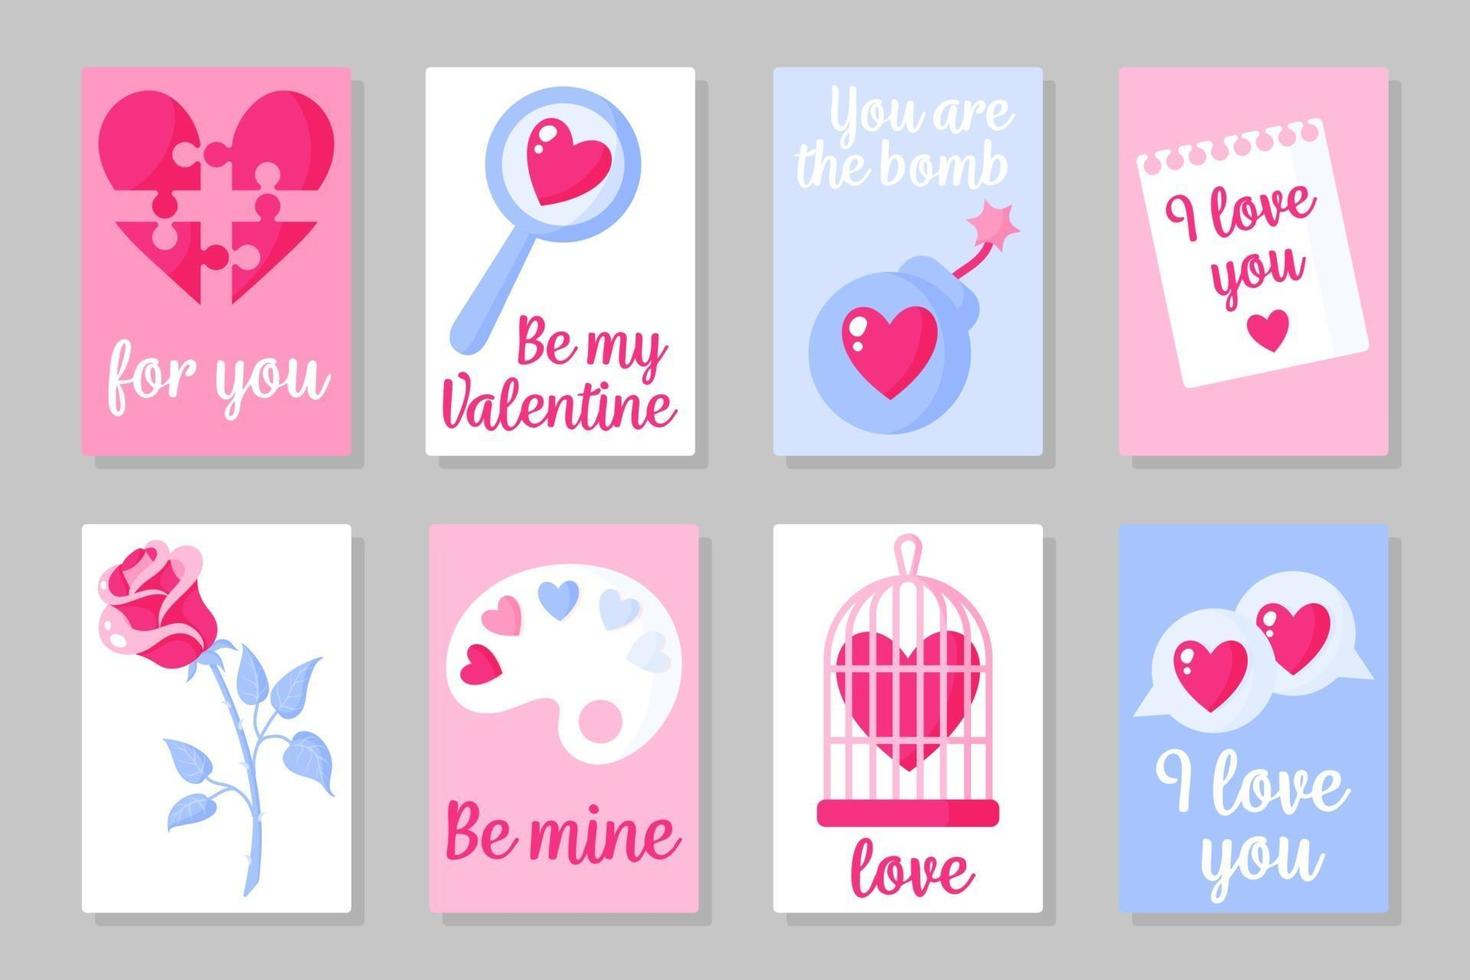 set roze, wit en blauw gekleurde kaarten voor Valentijnsdag of bruiloft. vector plat ontwerp geïsoleerd op een grijze achtergrond